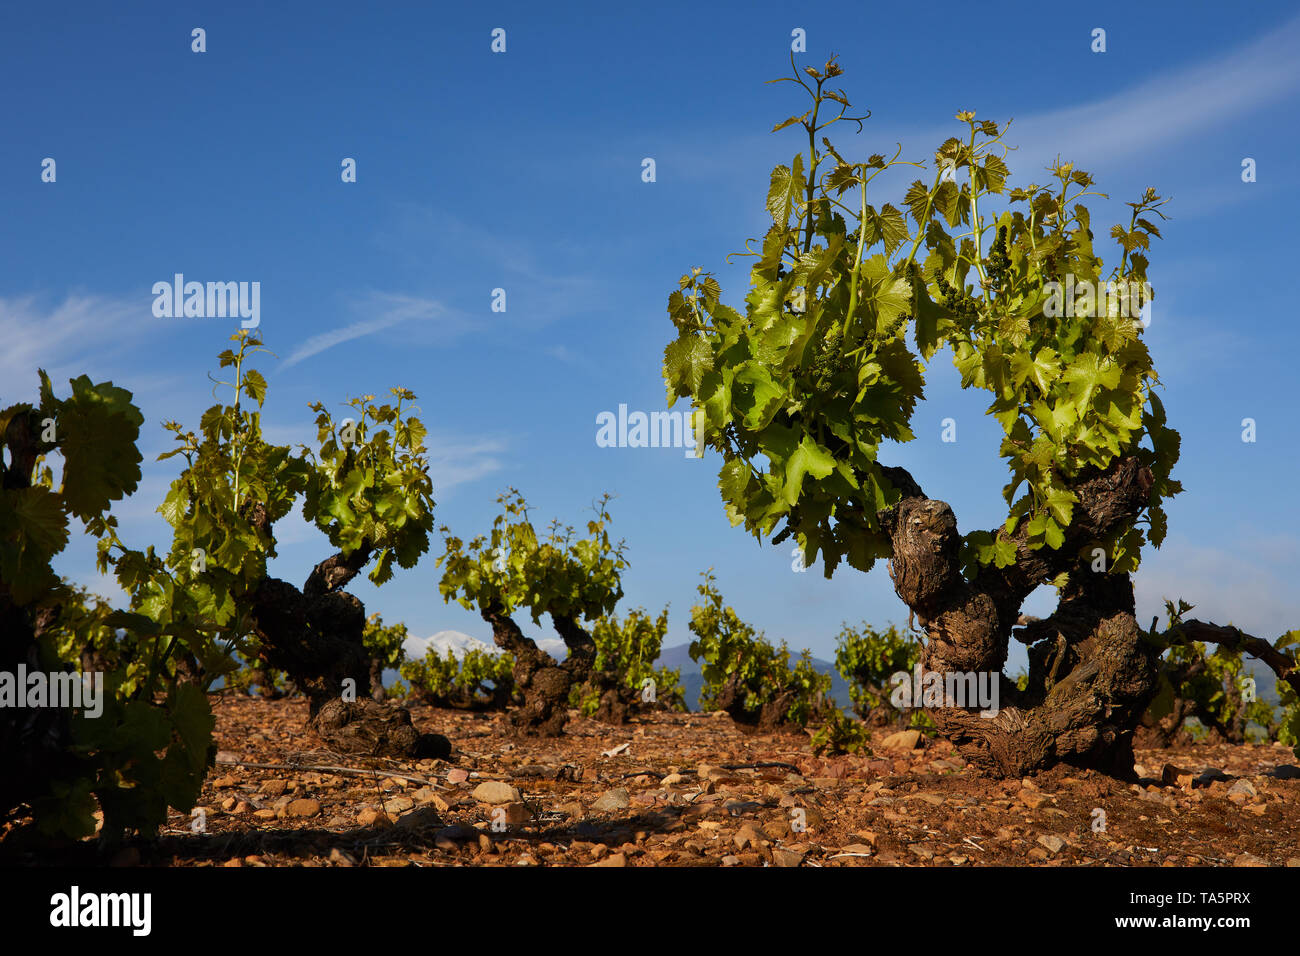 21/5/19 vignes de grenache Garnacha ou à proximité d'Auray (La Rioja, Espagne). La plus haute montagne de La Rioja, San Lorenzo, est en arrière-plan. Photo de James Banque D'Images